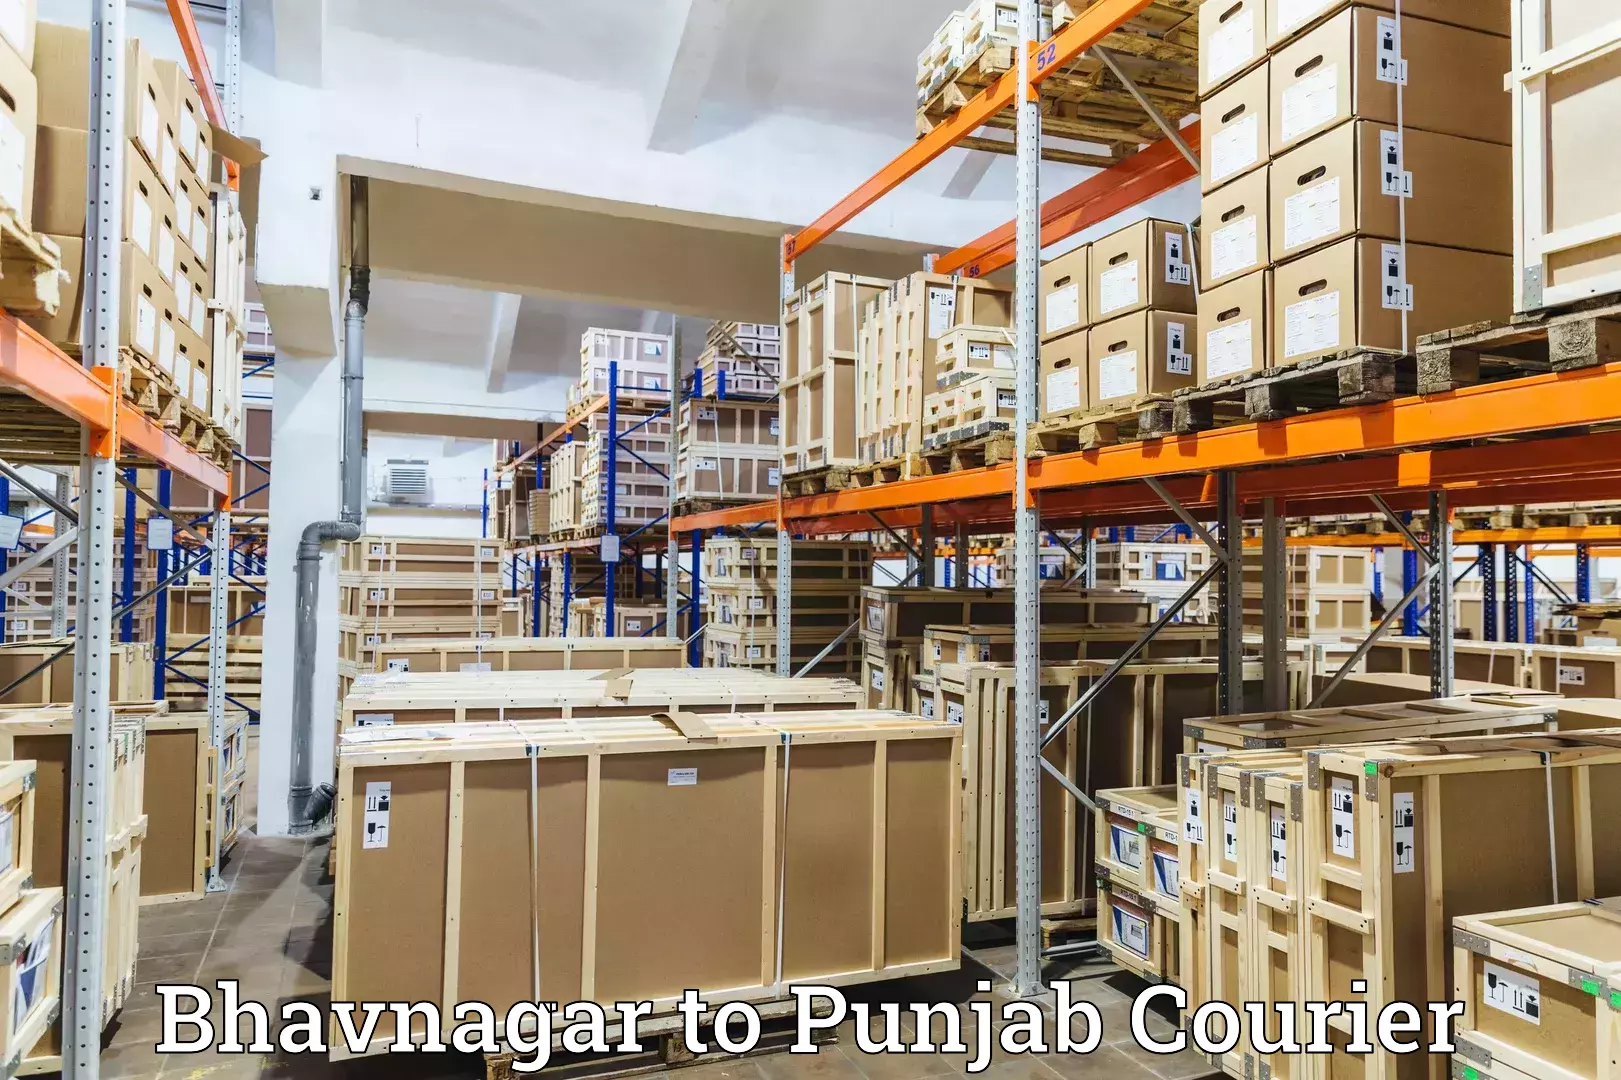 Door-to-door freight service Bhavnagar to Malout